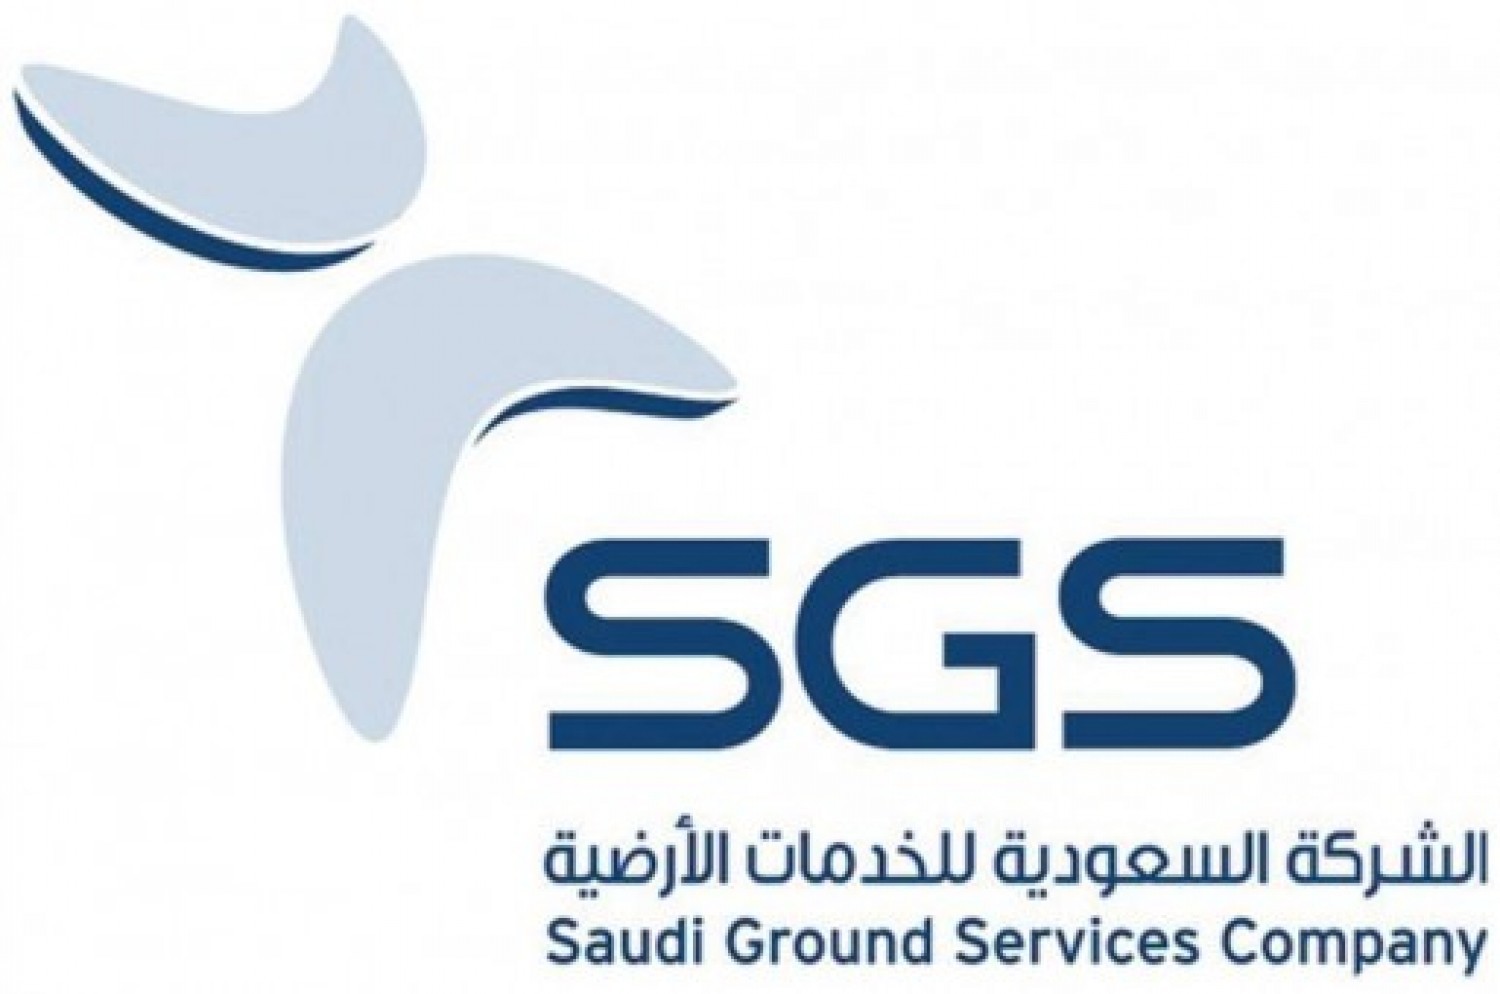 وظائف إدارية لدى الشركة السعودية للخدمات الأرضية